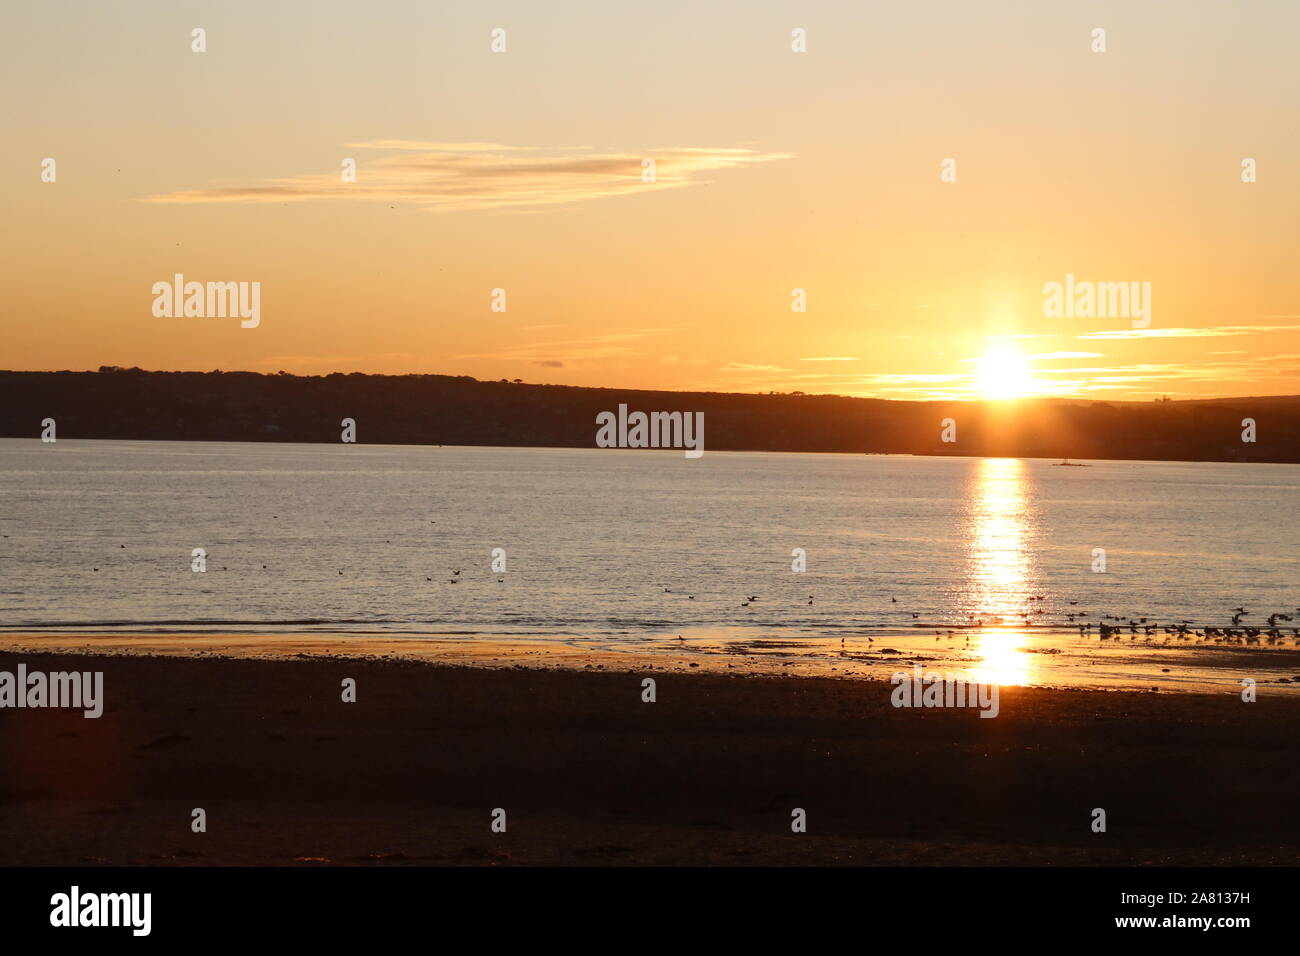 Sun setting over sea Stock Photo